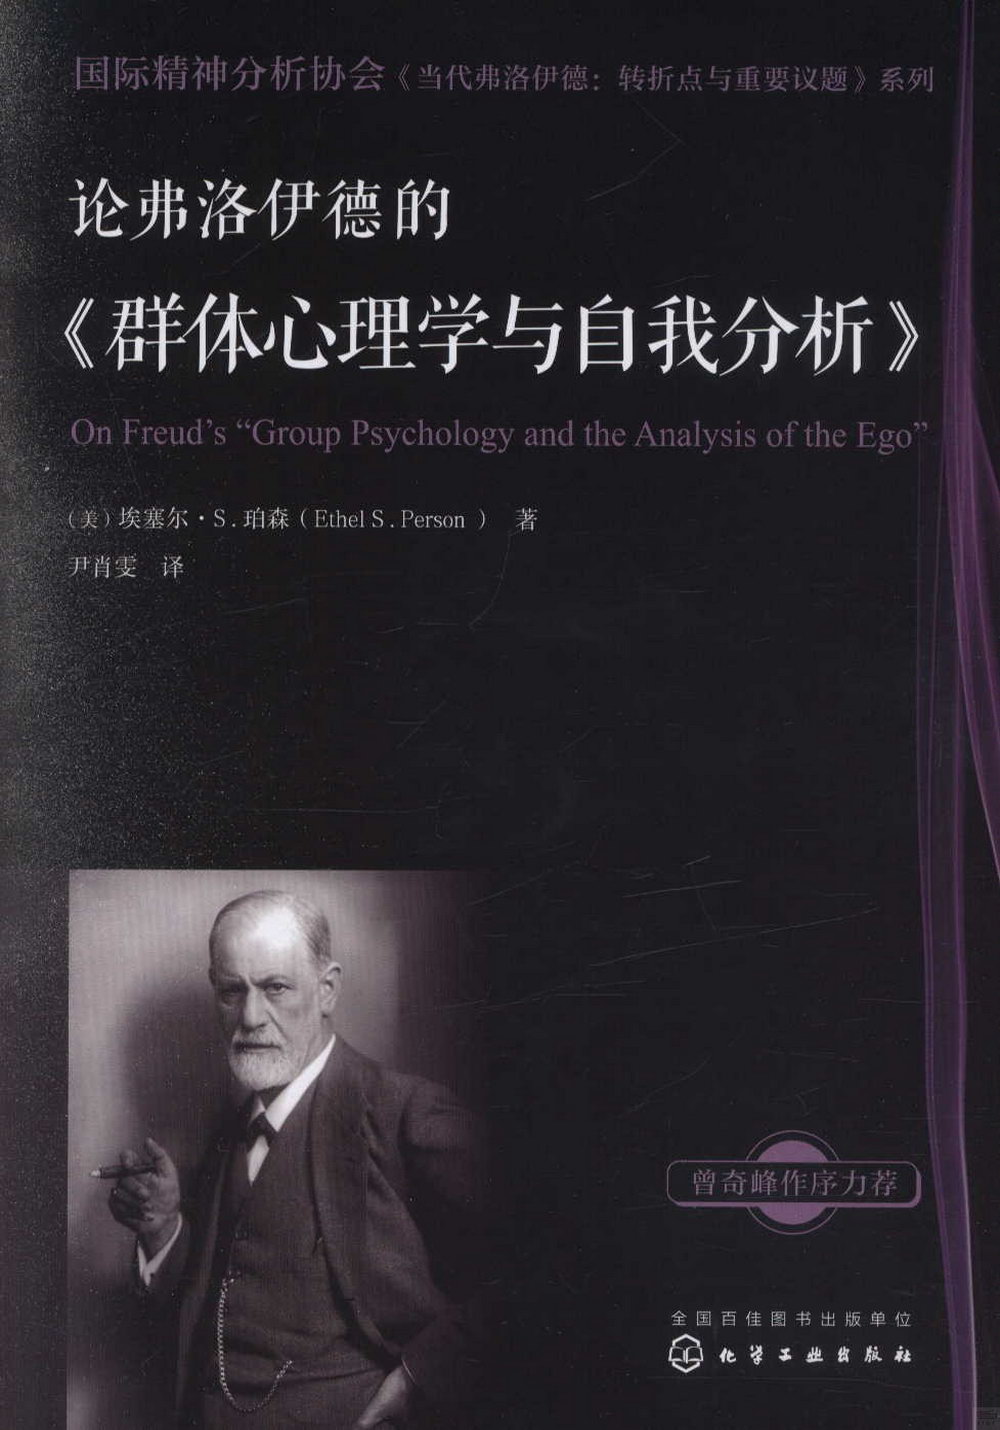 論弗洛伊德的《群體心理學與自我分析》